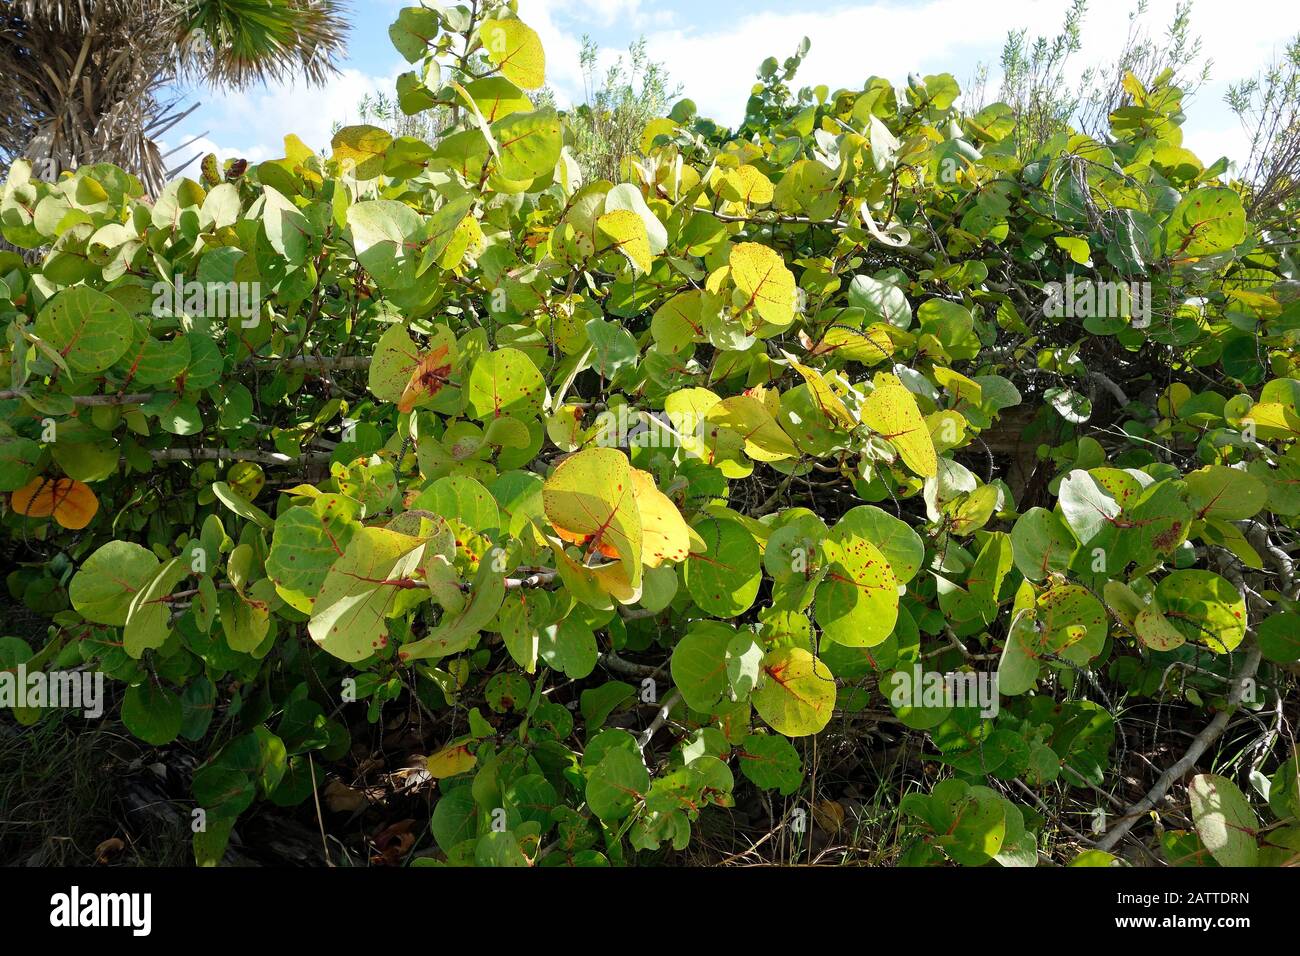 a seagrape plant - Coccoloba uvifera - in florida Stock Photo